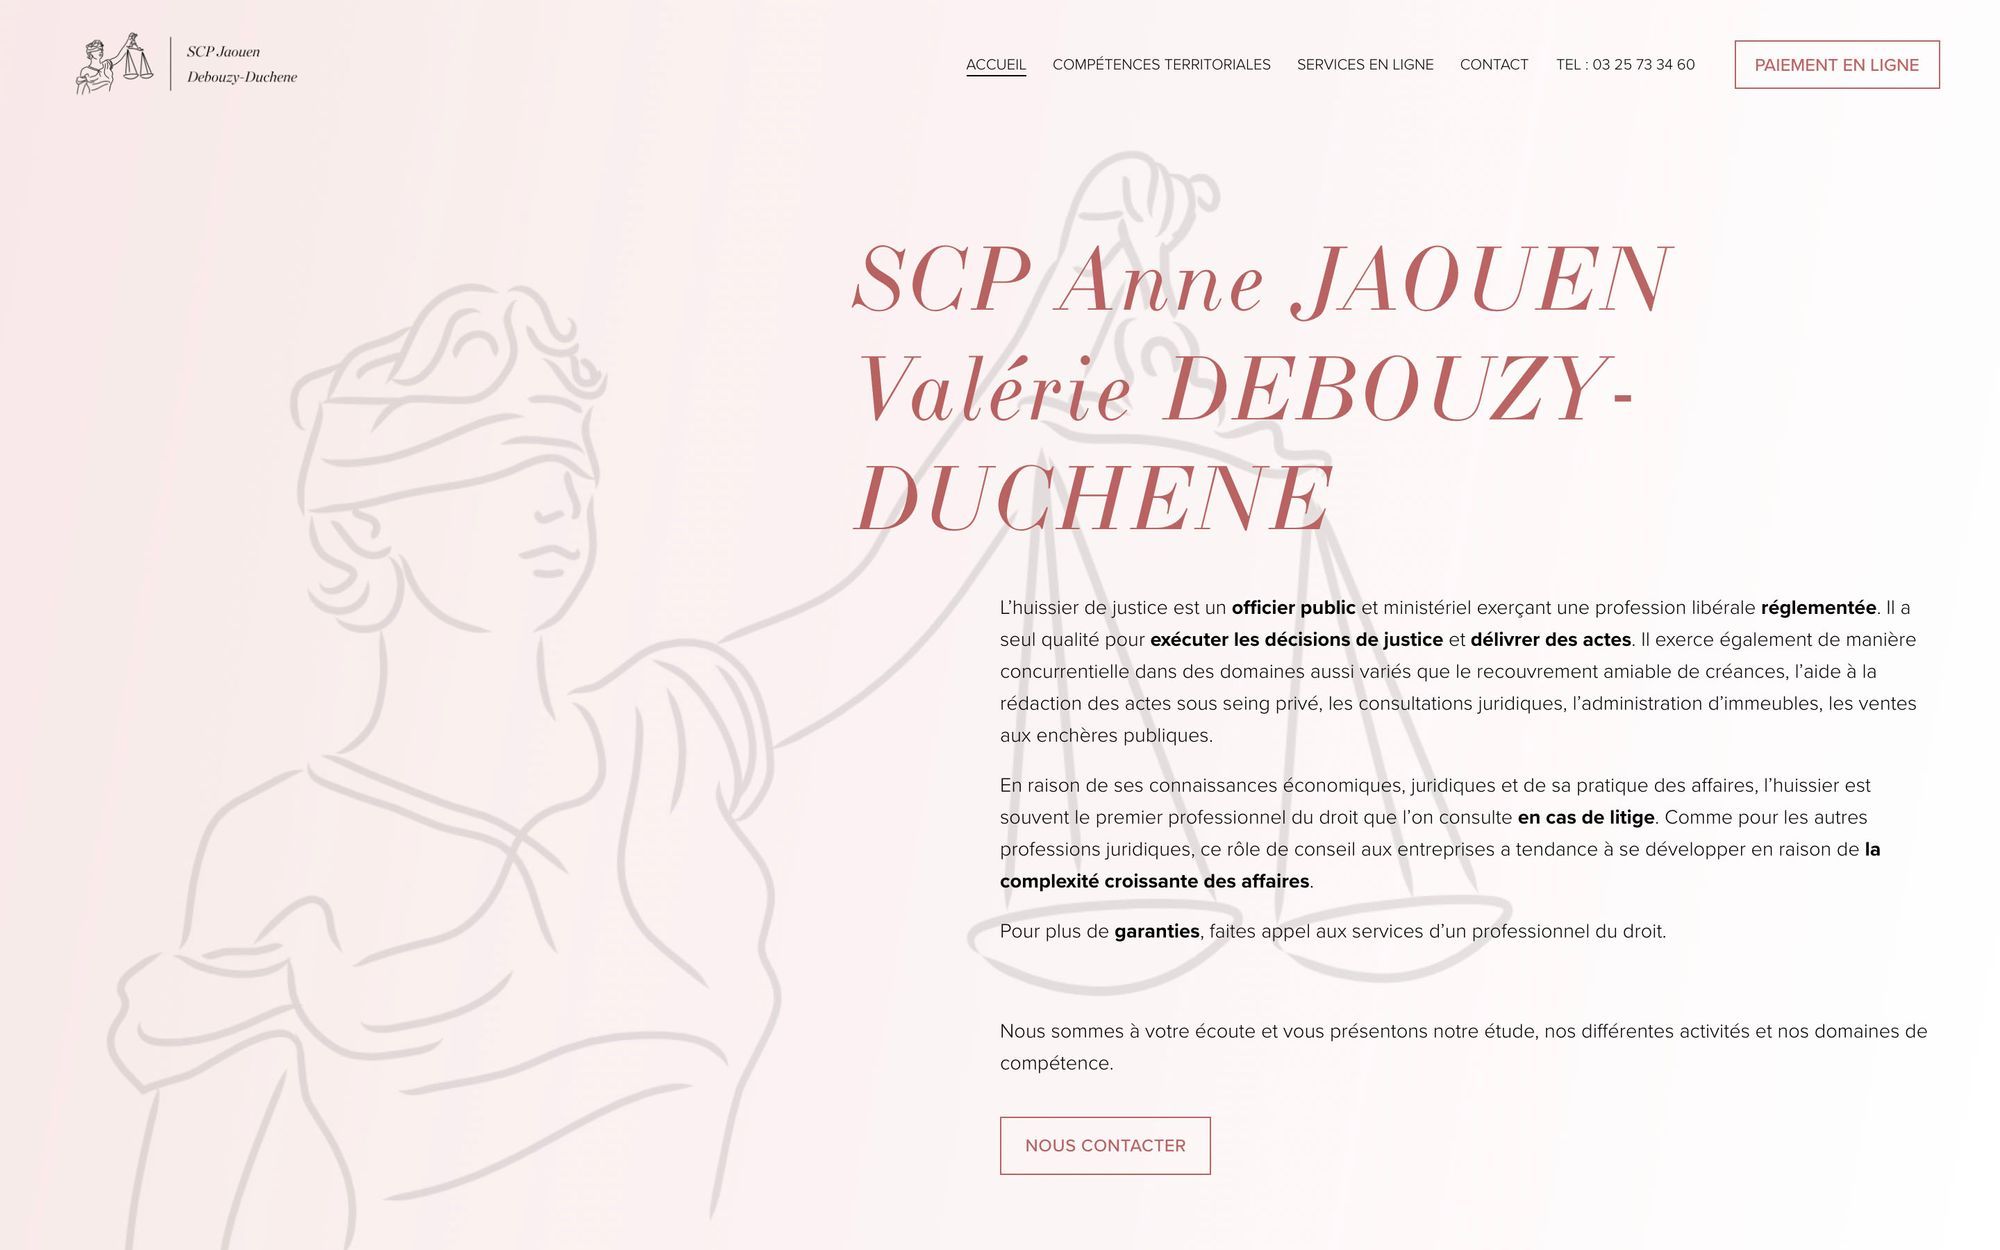 SCP Anne JAOUEN
Valérie DEBOUZY-DUCHENE